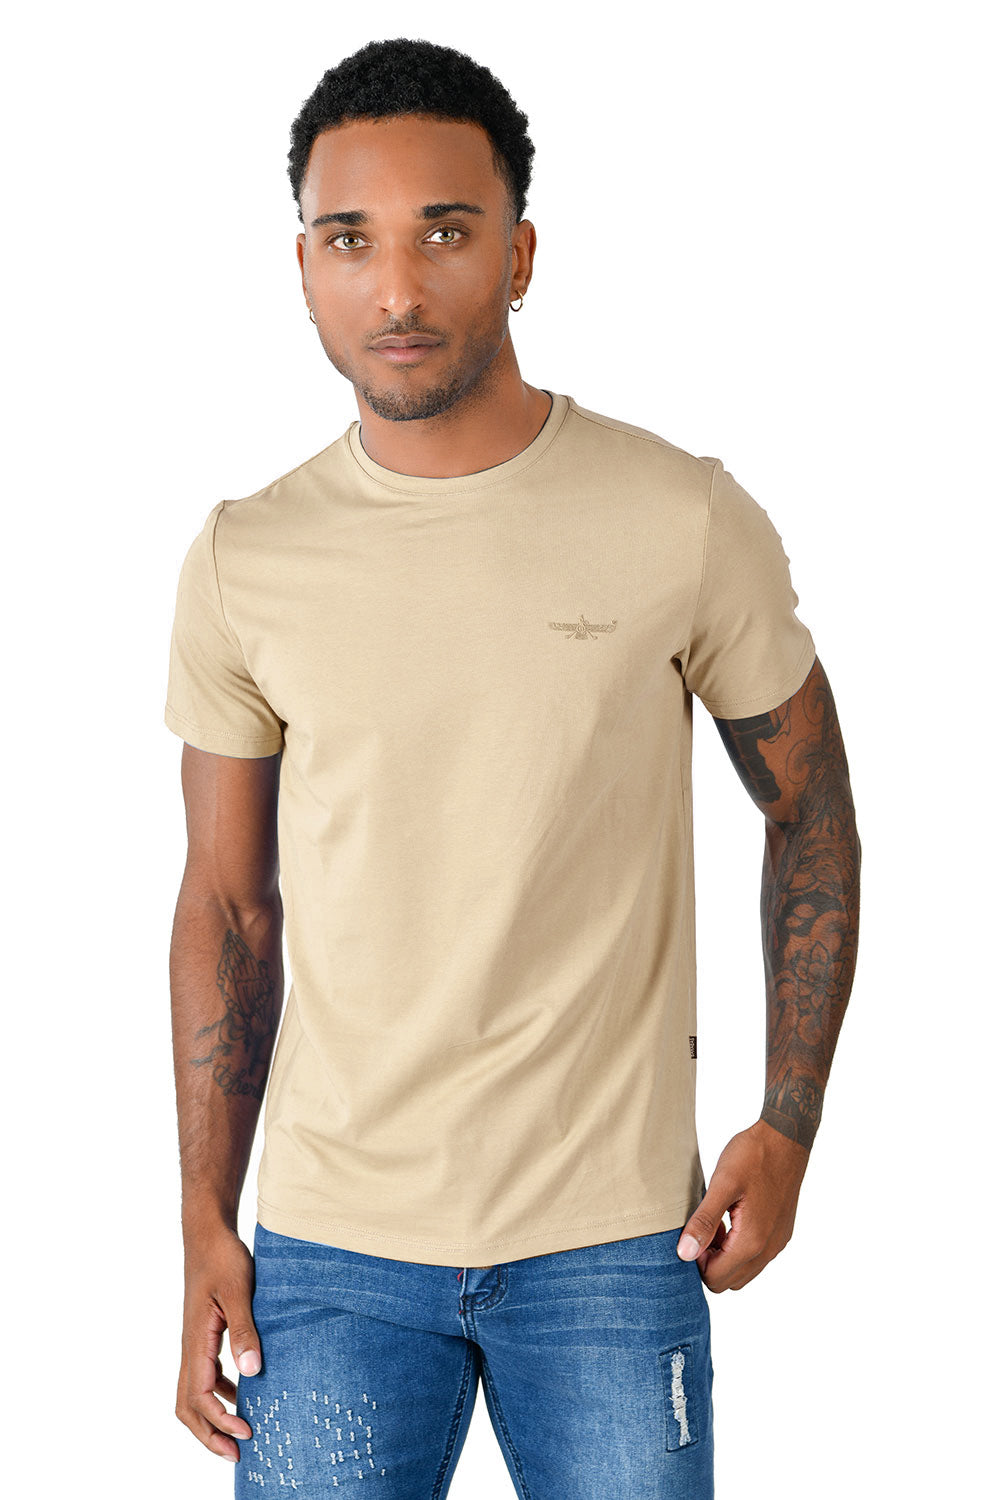 BARABAS Men's Basic Solid Color Crew-neck T-shirts ST933 Narural